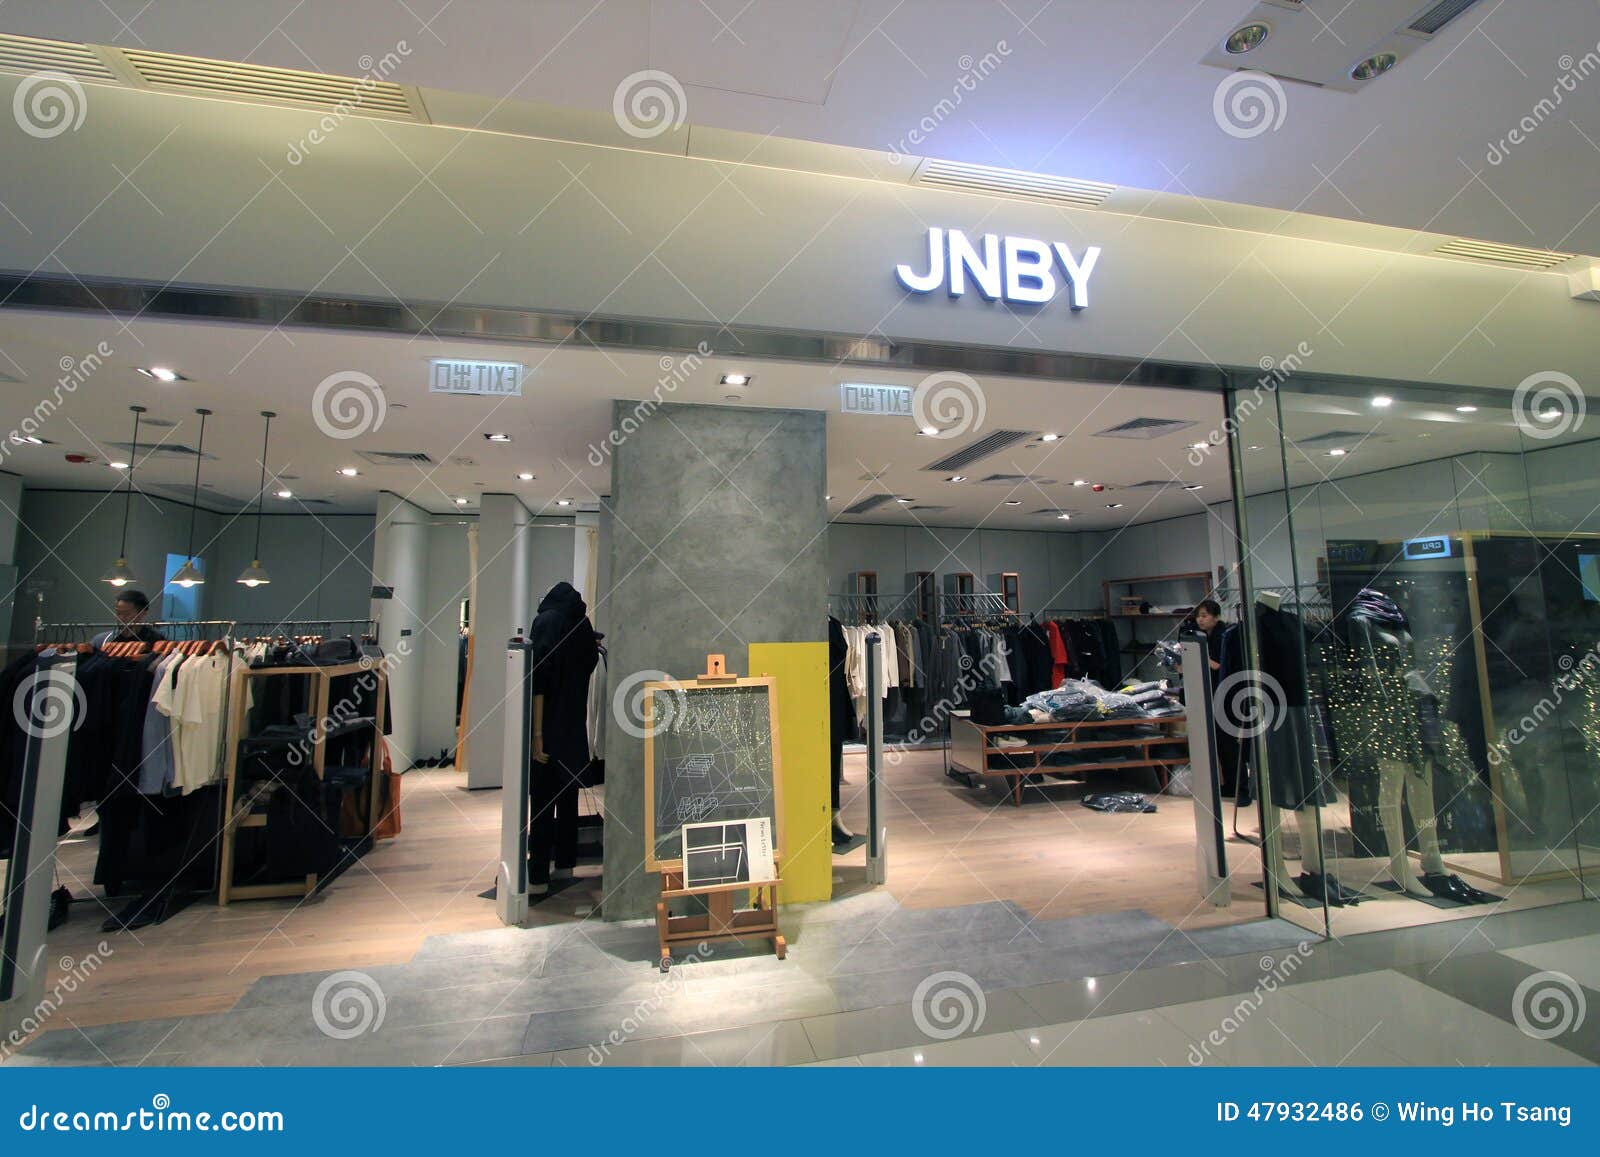 Jnby Shop In Hong Kong Editorial Photo - Image: 47932486